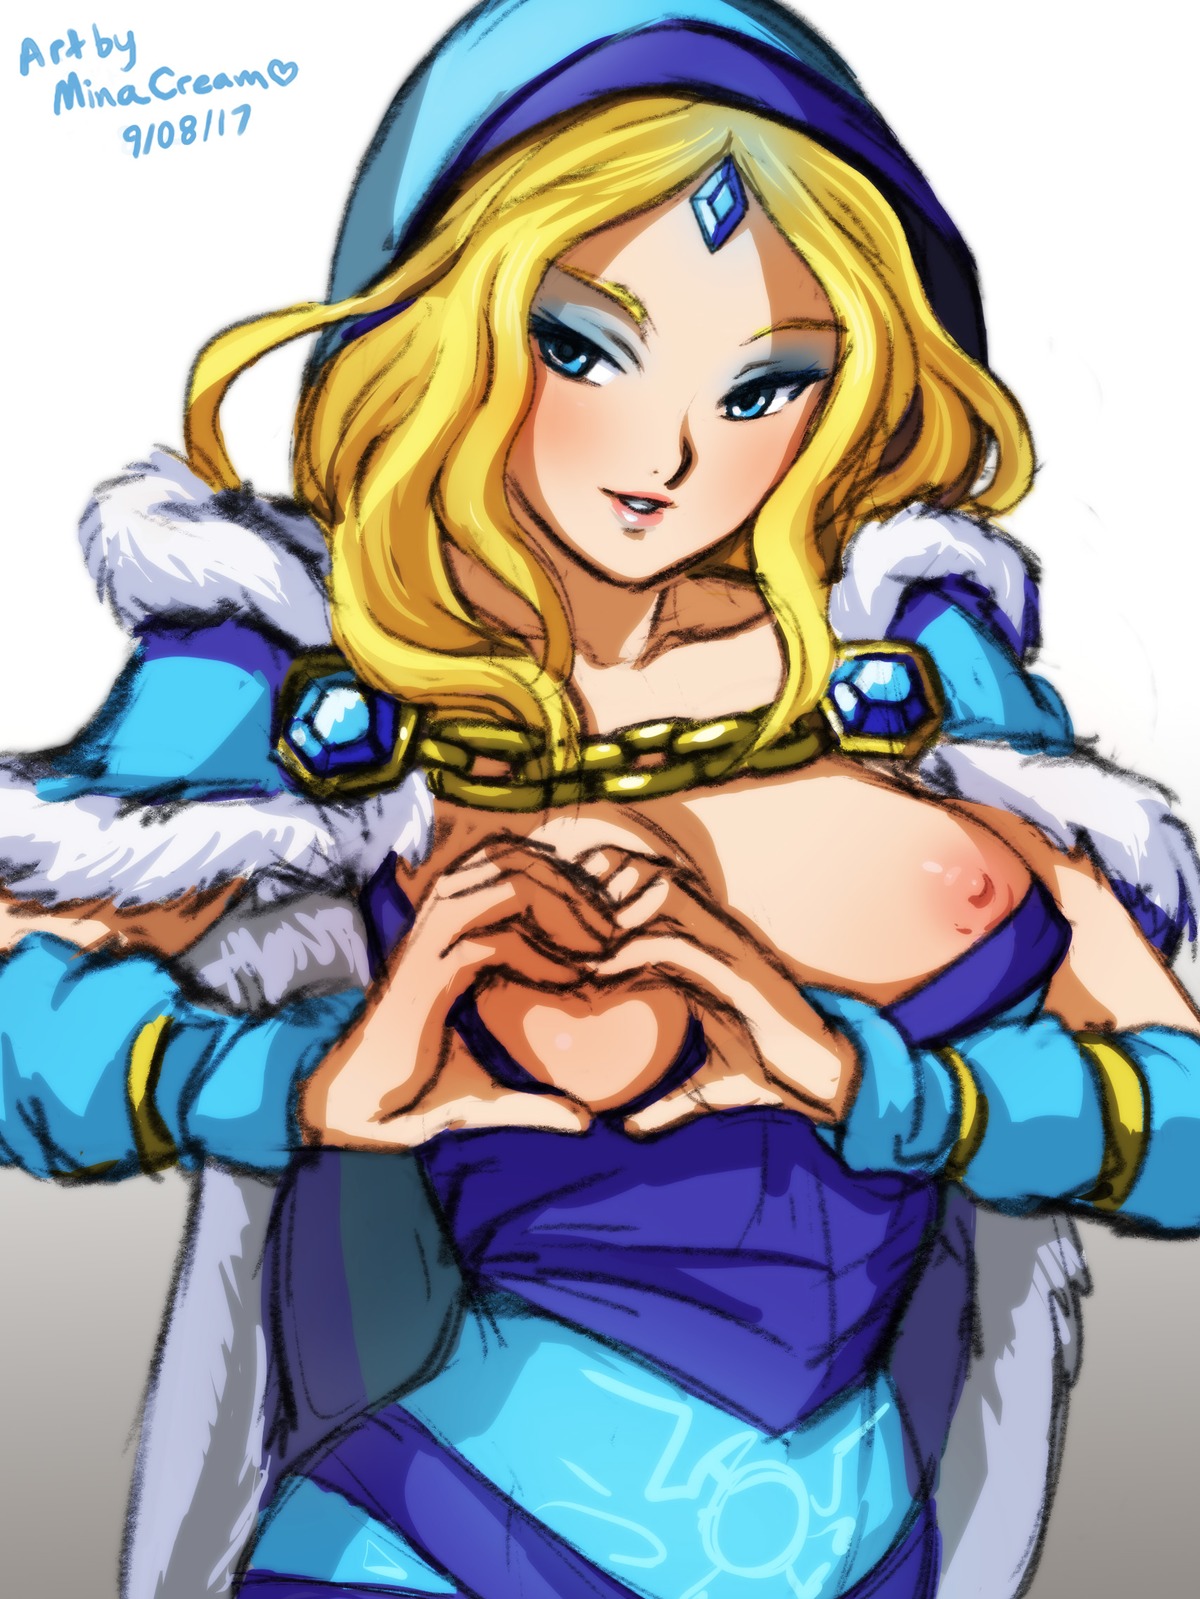 breasts crystal_maiden dota2 heart-shaped_boob minacream